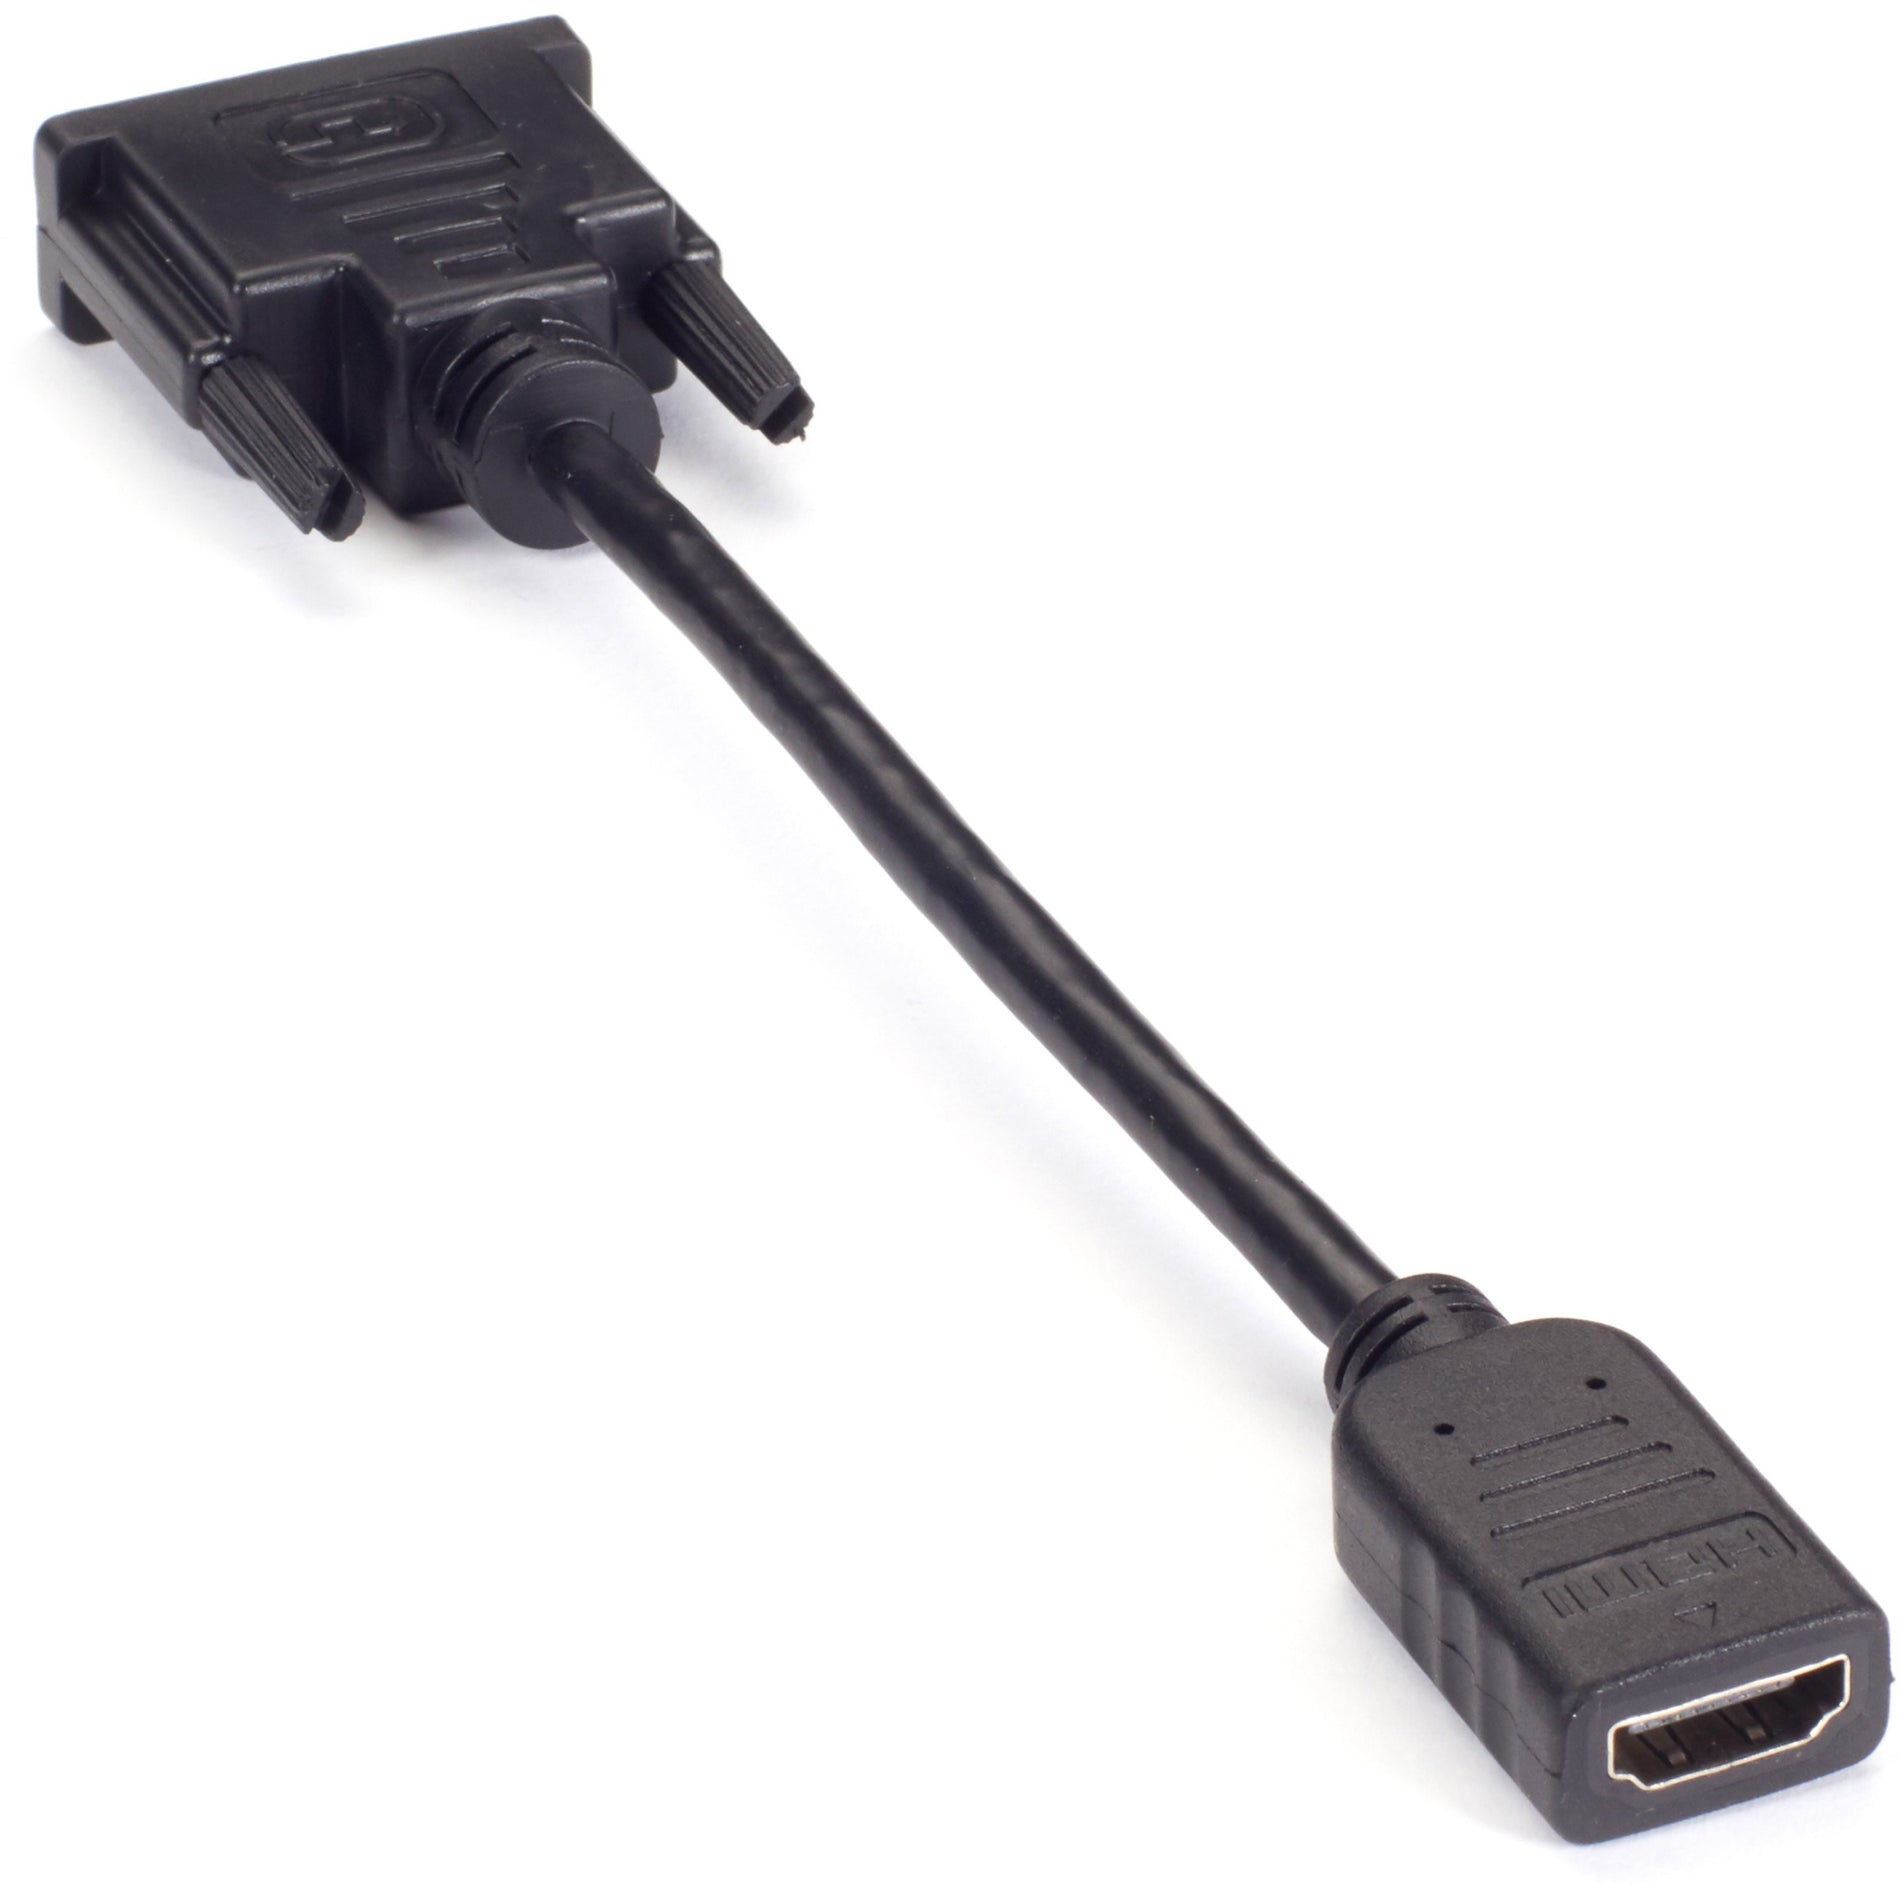 الصندوق الأسود VA-DVID-HDMI محول فيديو دونغل - DVI-D ذكر إلى HDMI أنثى، مقاوم للتوتر، مزيد الأمان، طول الكابل 8 بوصات، دعم للقرار 1920 × 1080  Black Box العلامة التجارية